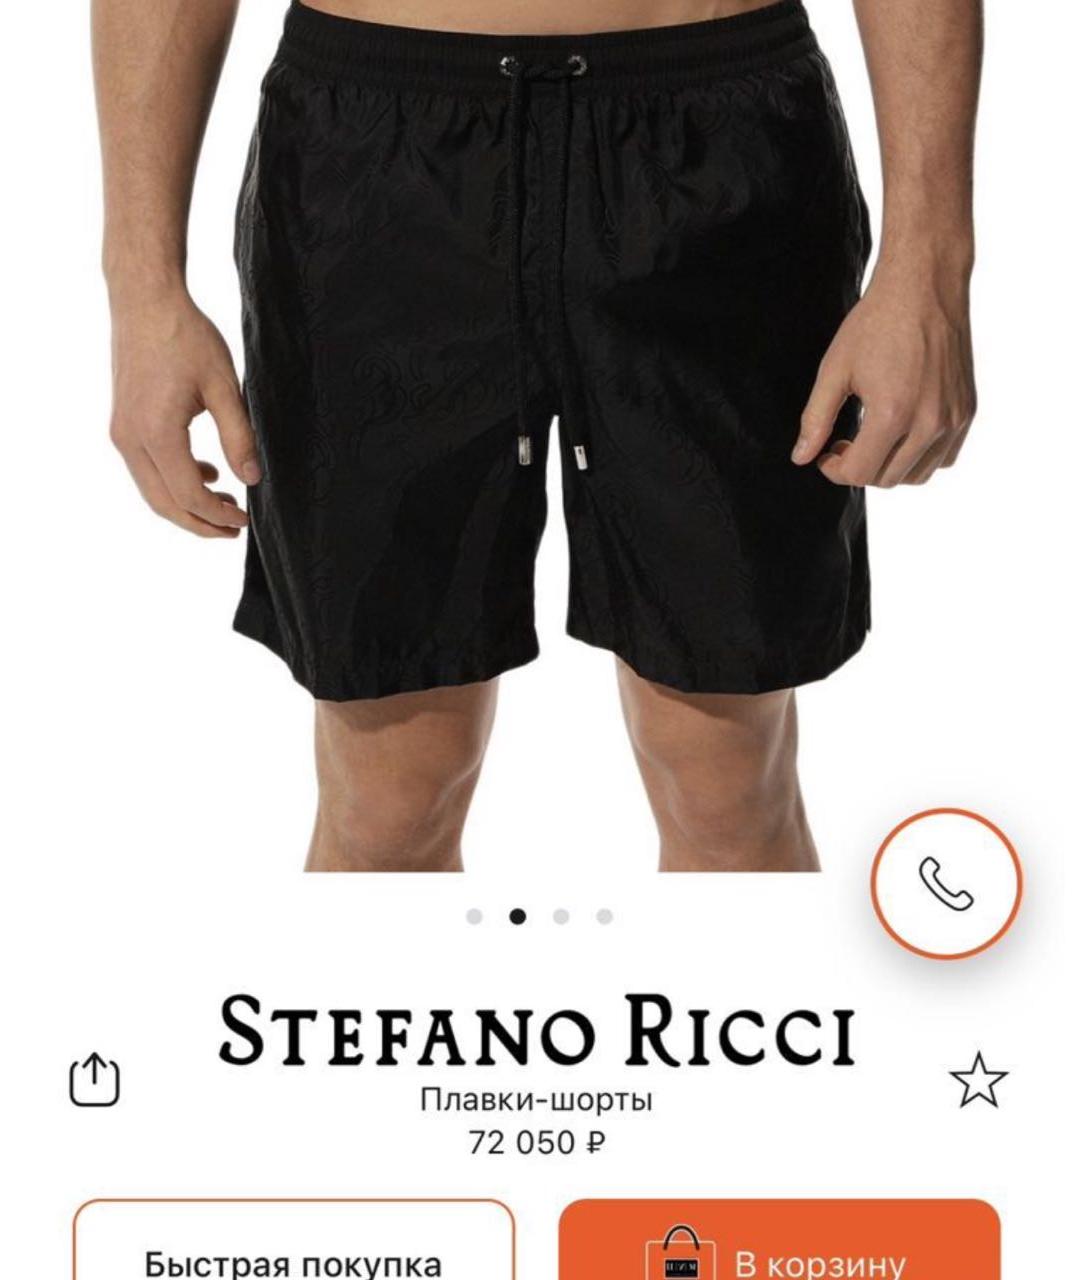 STEFANO RICCI Черные шорты, фото 2